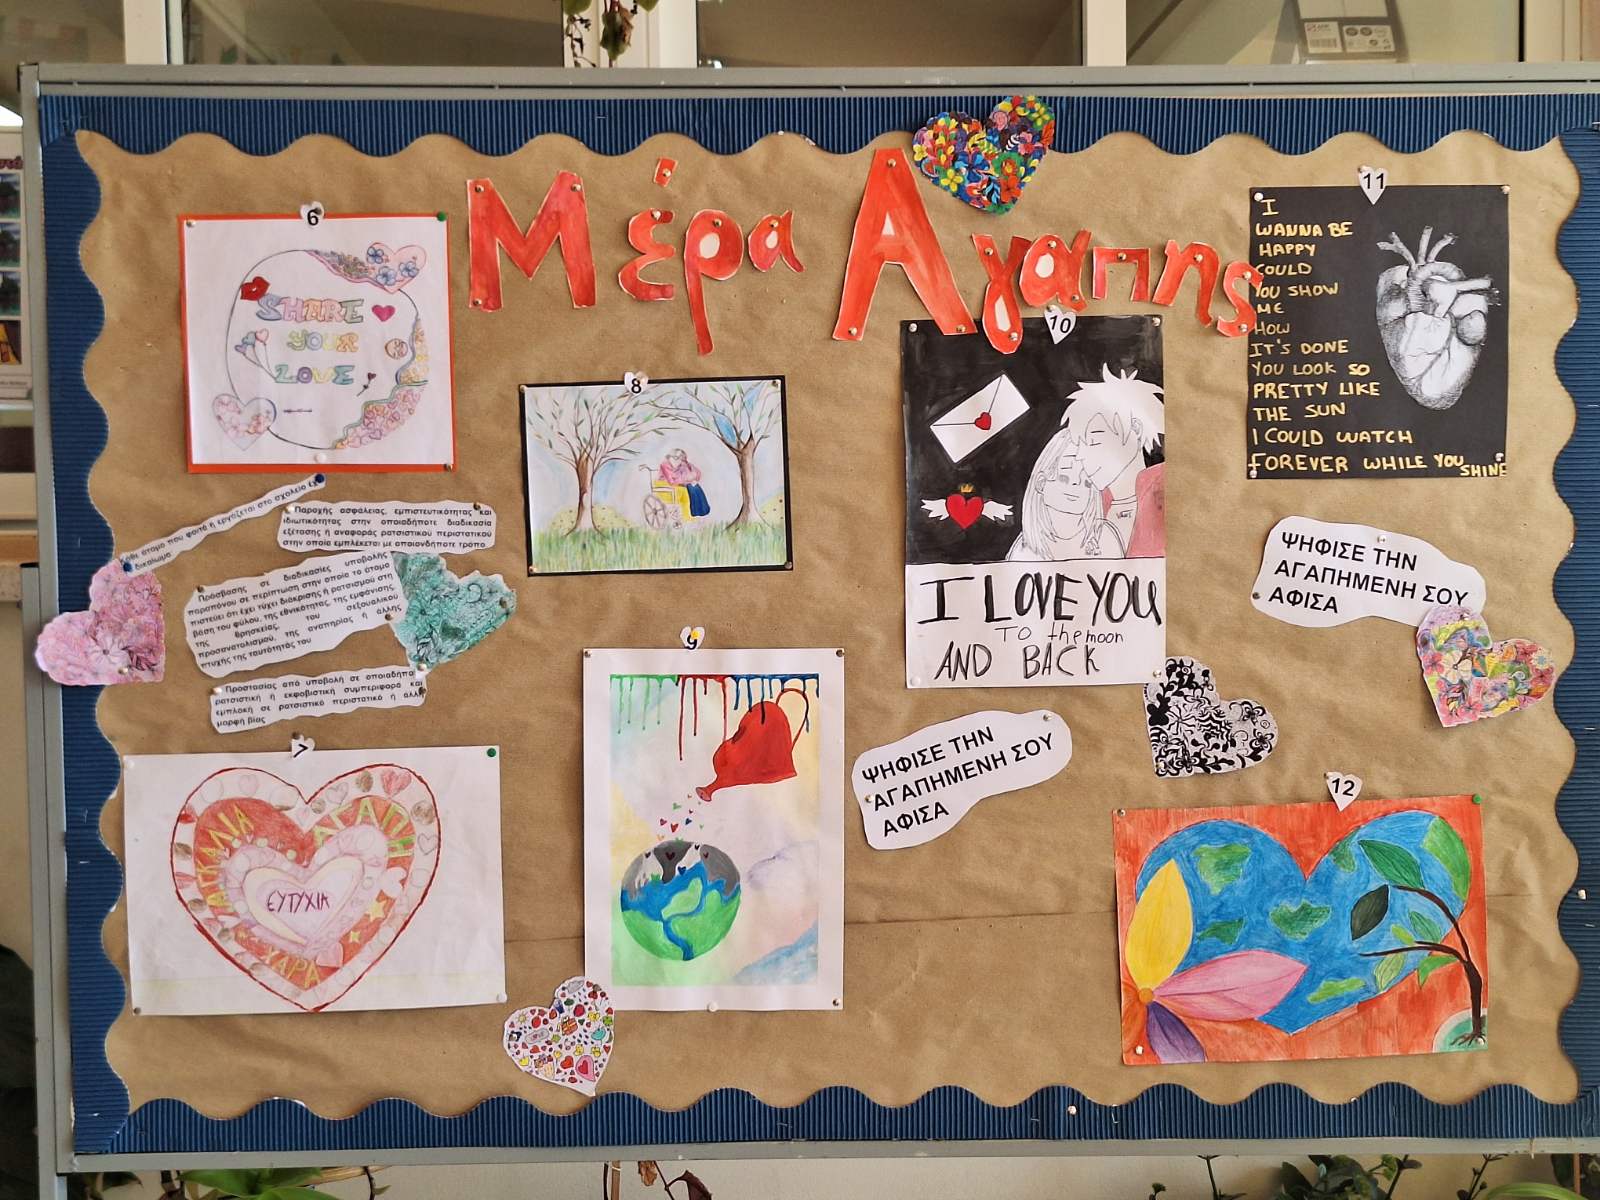 Αφίσες για την ημέρα της Αγάπης και του αντιρατσιστικού κώδικα δημιούργησαν μαθητές του Περιφερειακού Γυμνασίου και Λυκείου Λευκάρων